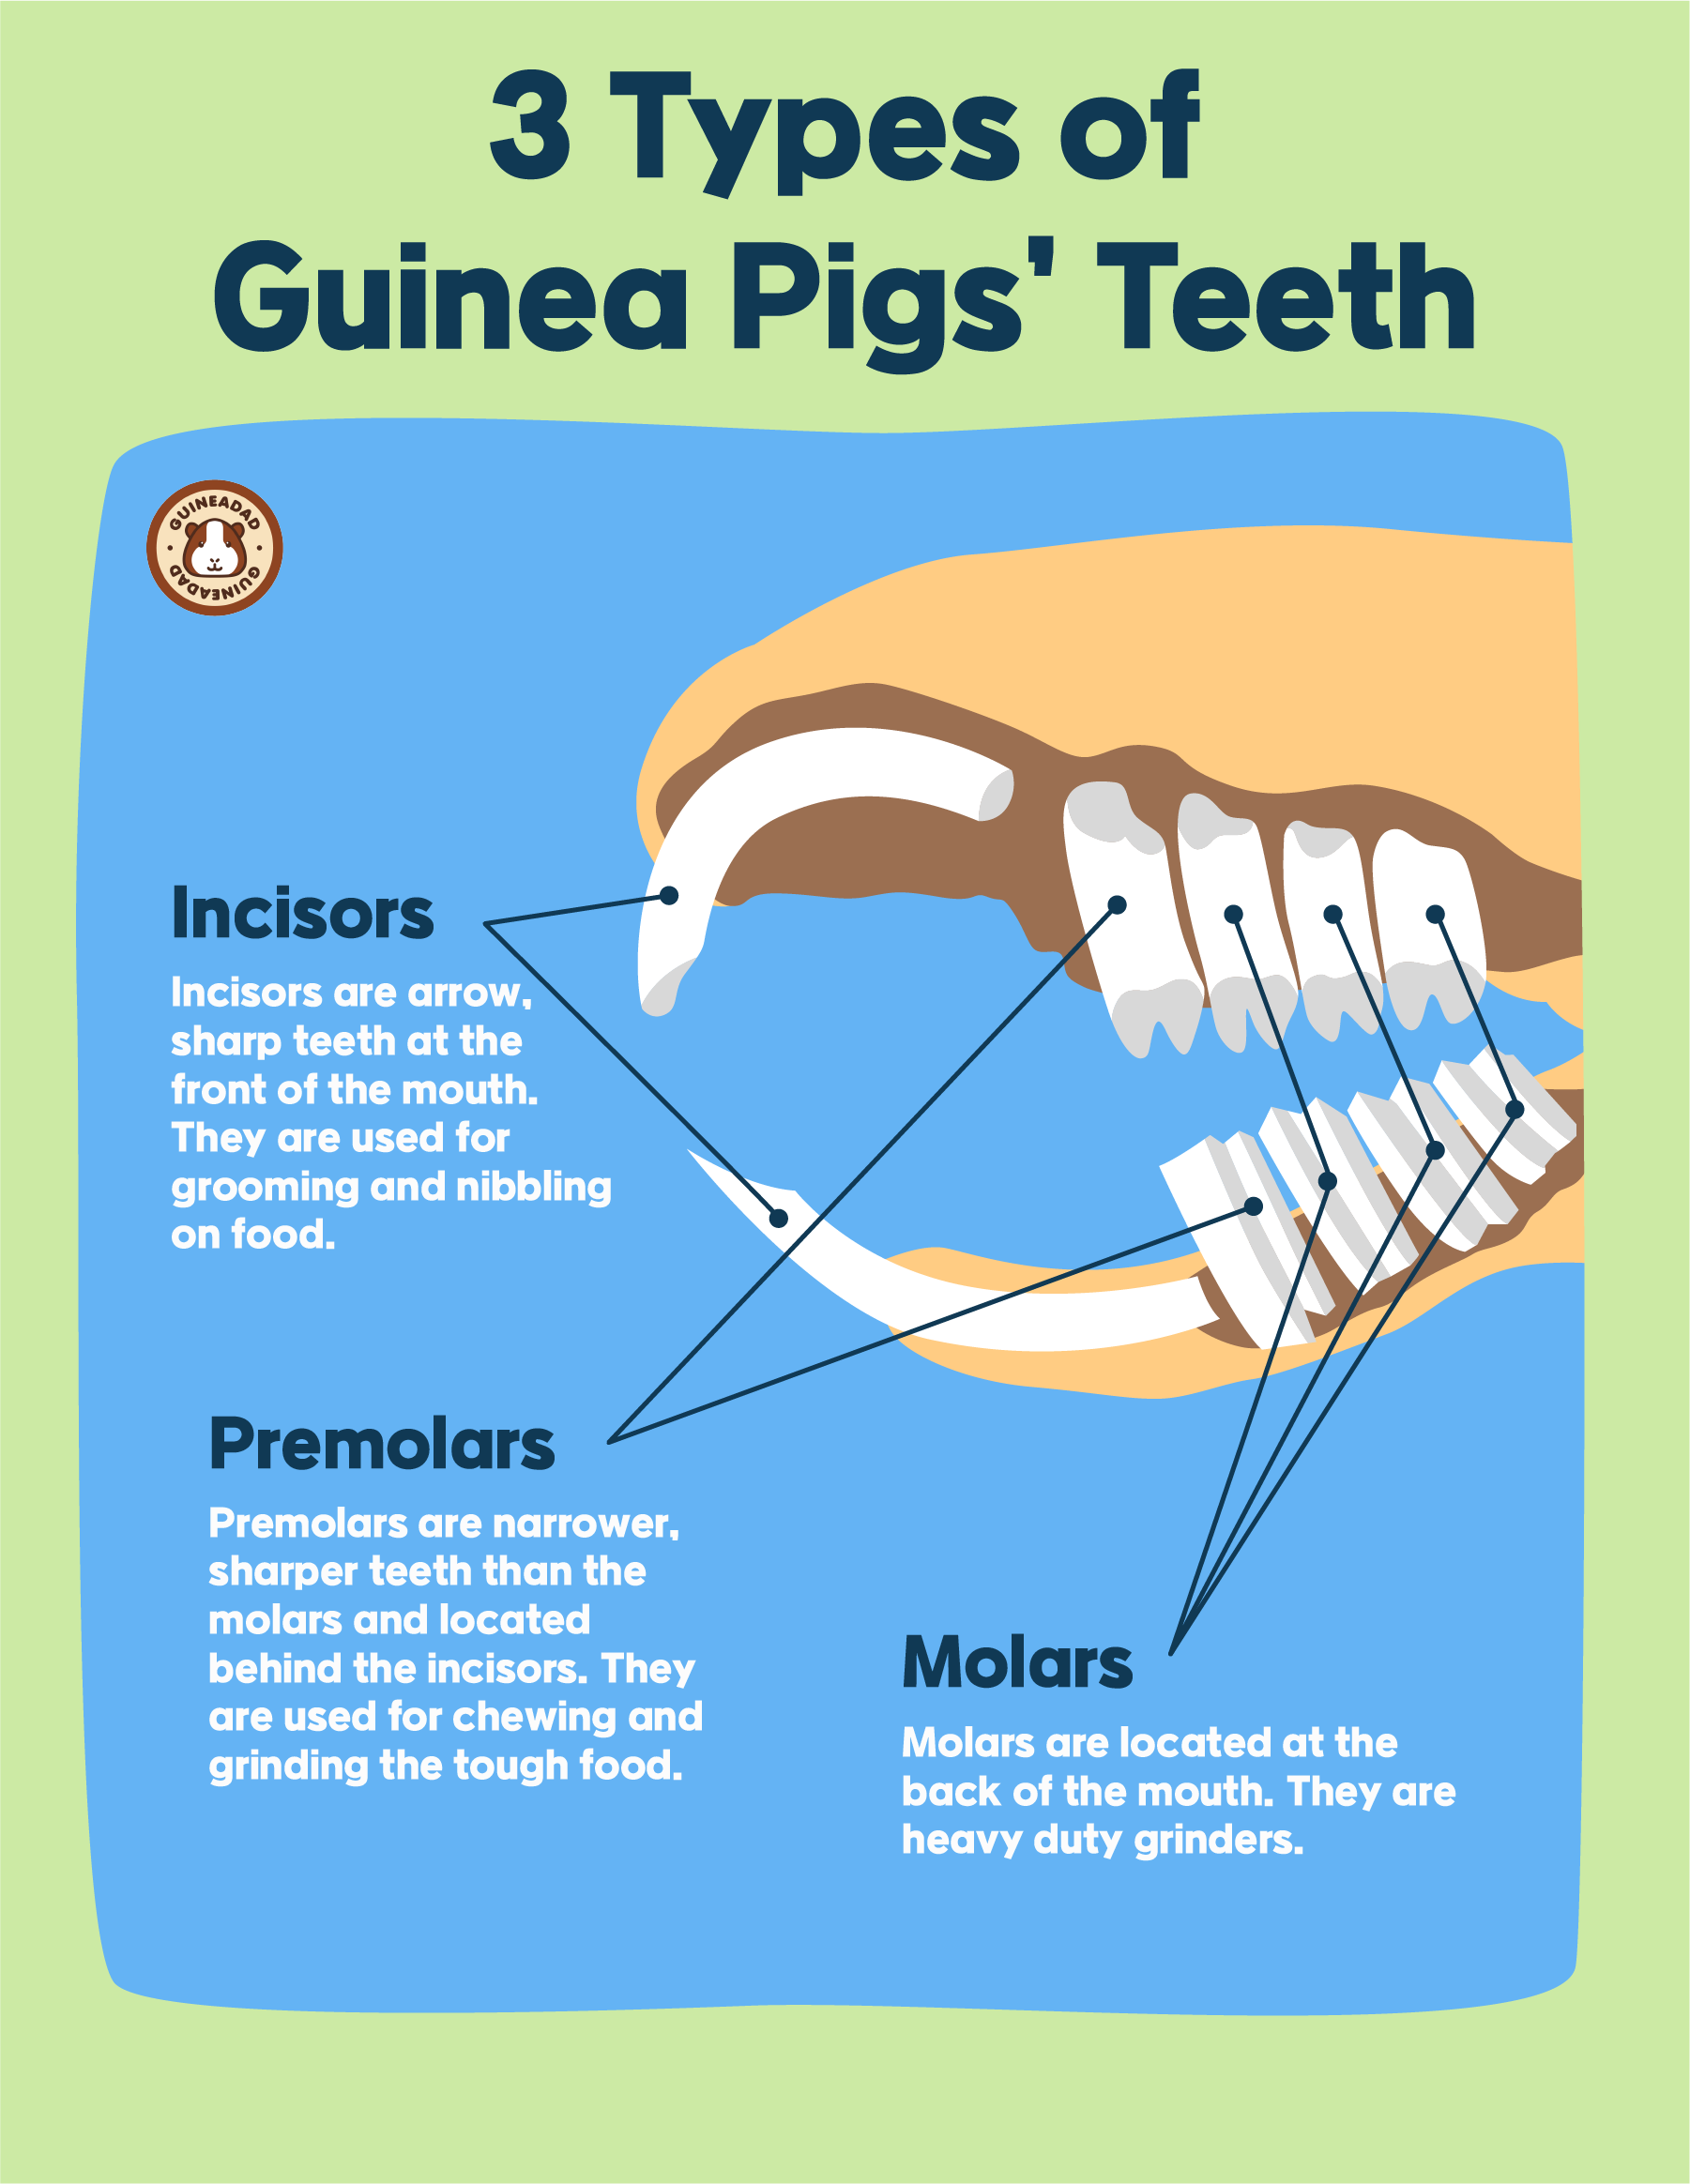 3 Types of Guinea Pigs' Teeth